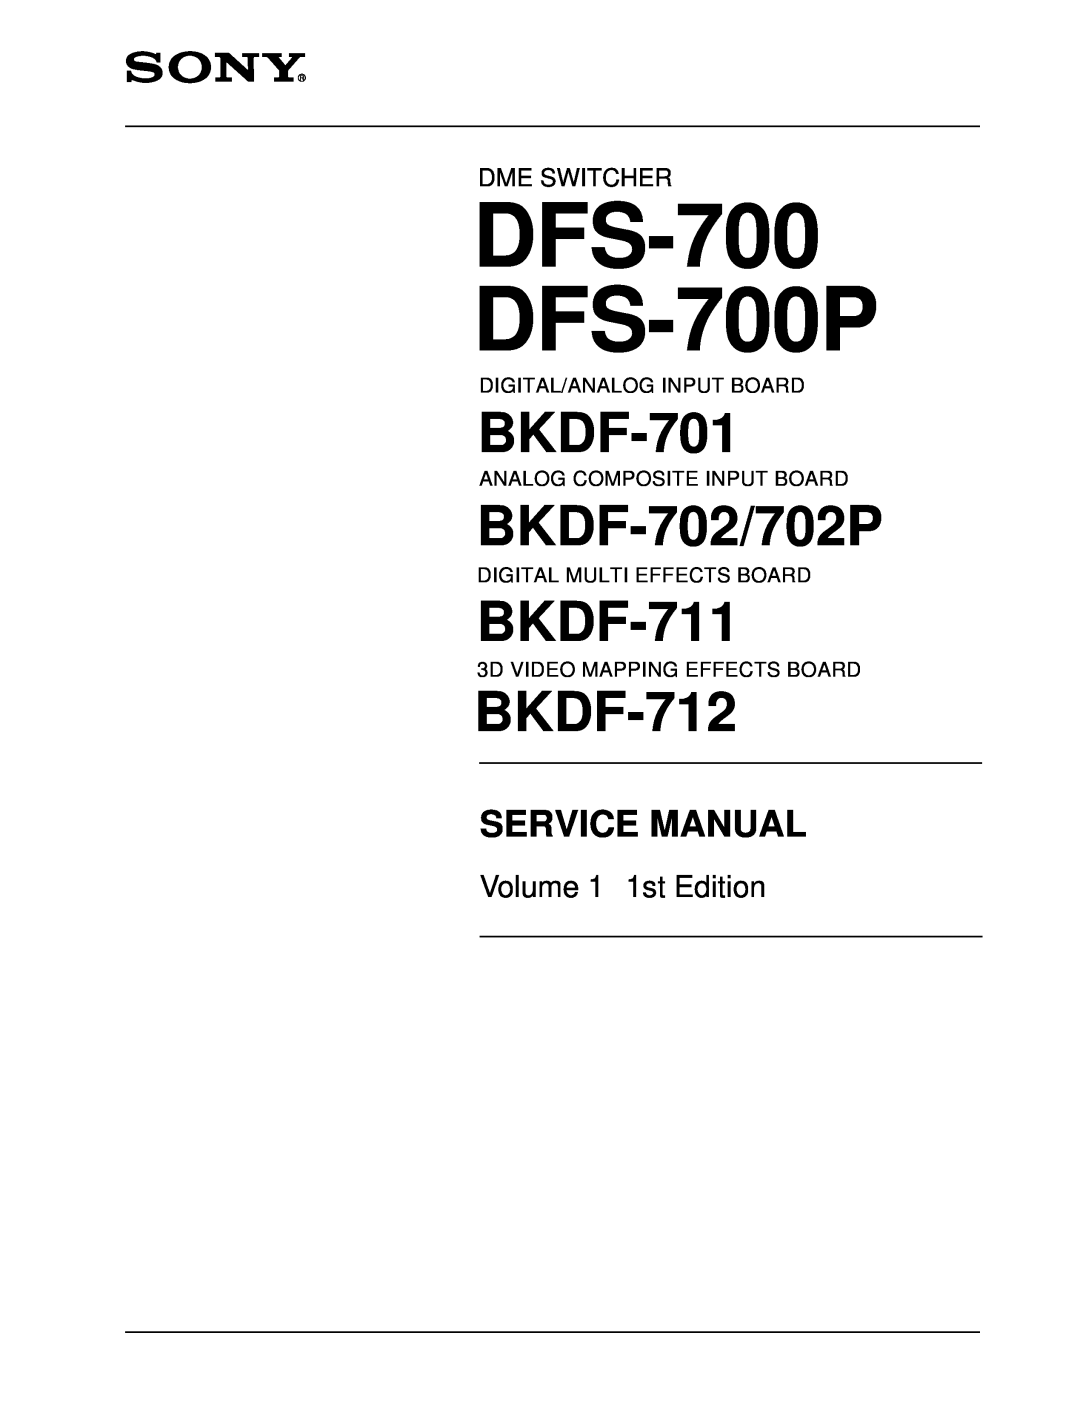 Sony service manual DFS-700 DFS-700P, BKDF-701, BKDF-702/702P, BKDF-711, BKDF-712, Service Manual, Volume 1 1st Edition 